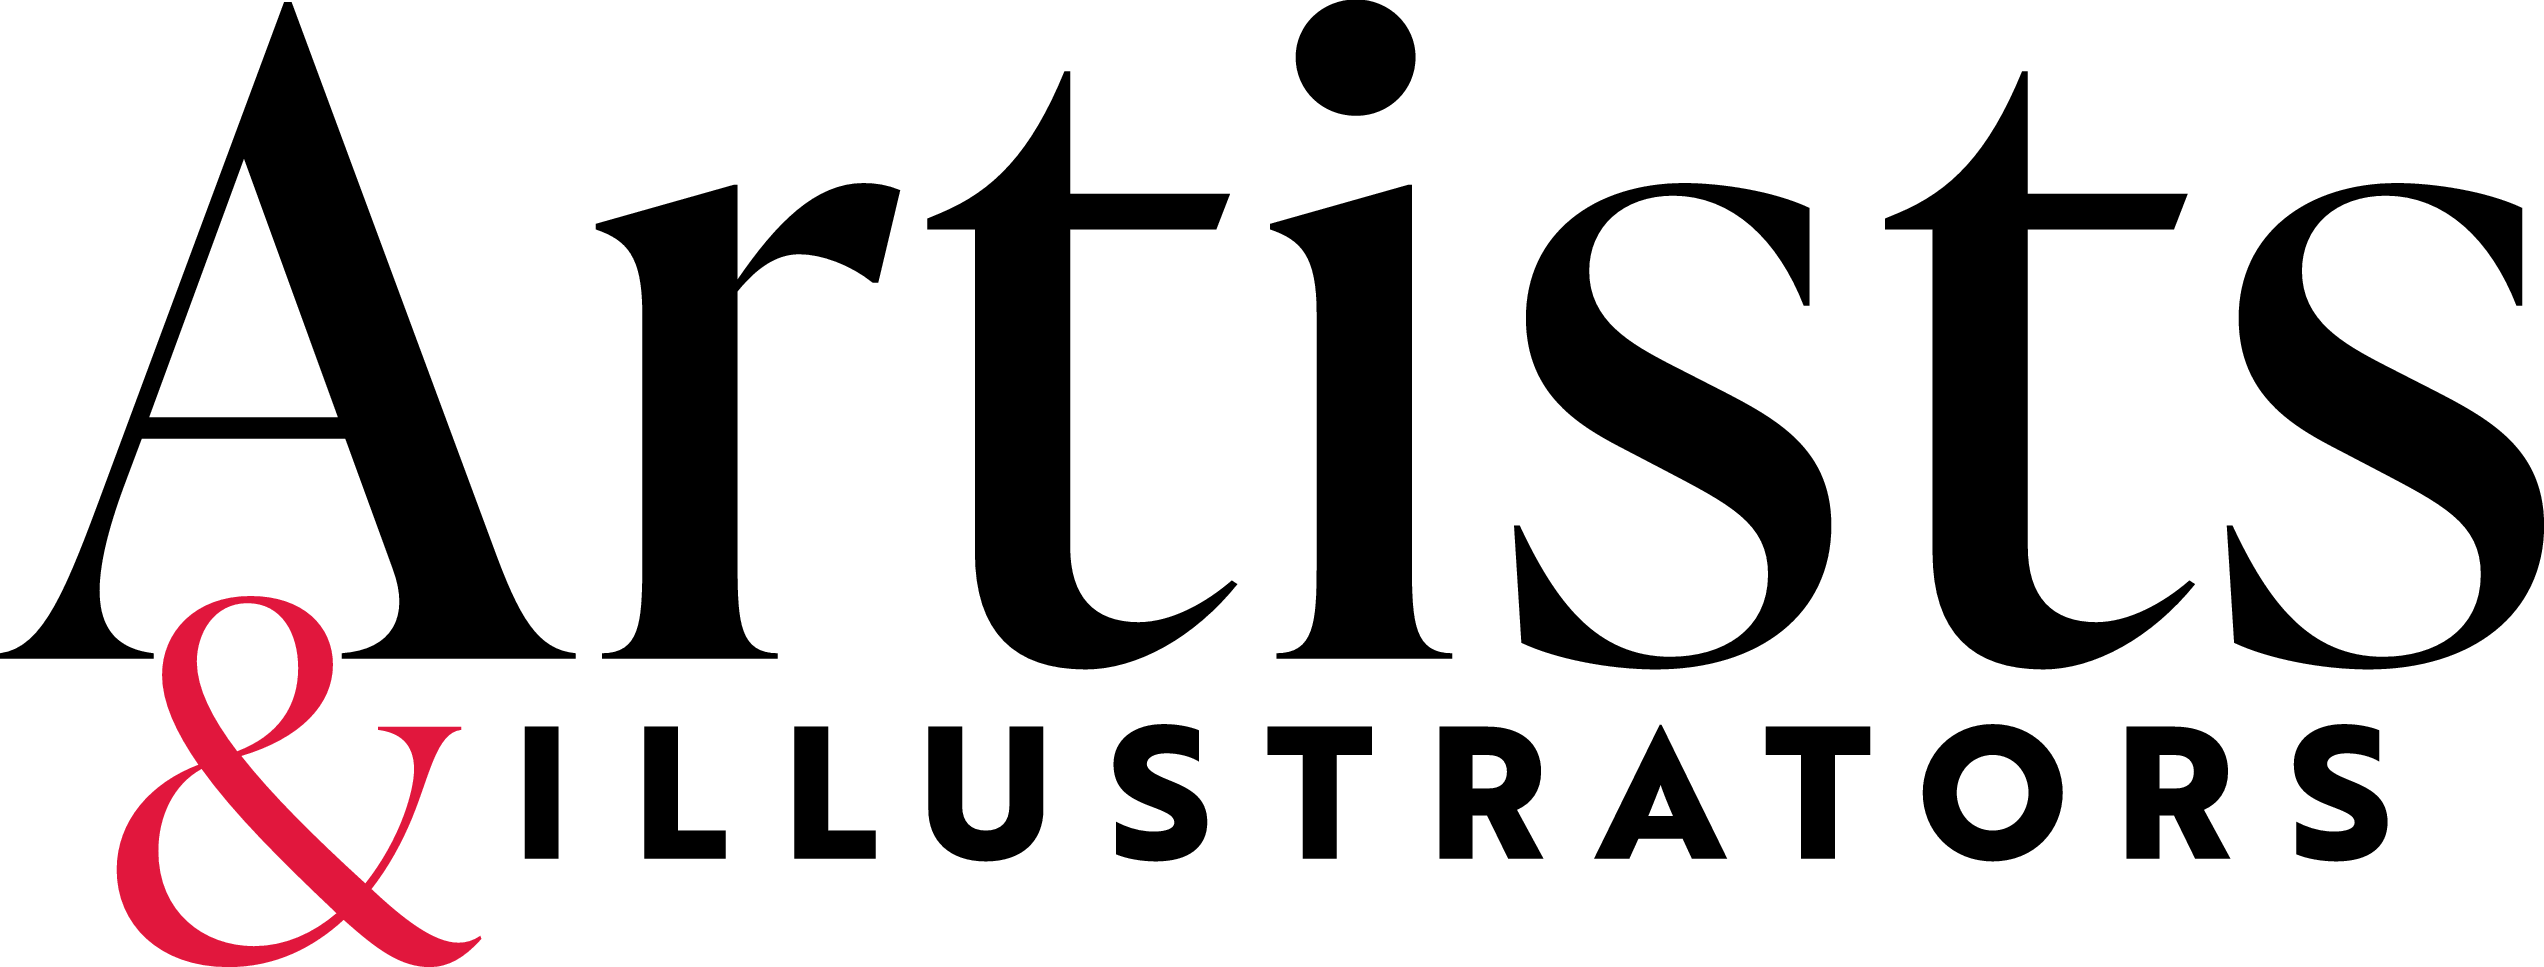 艺术家和插图画家